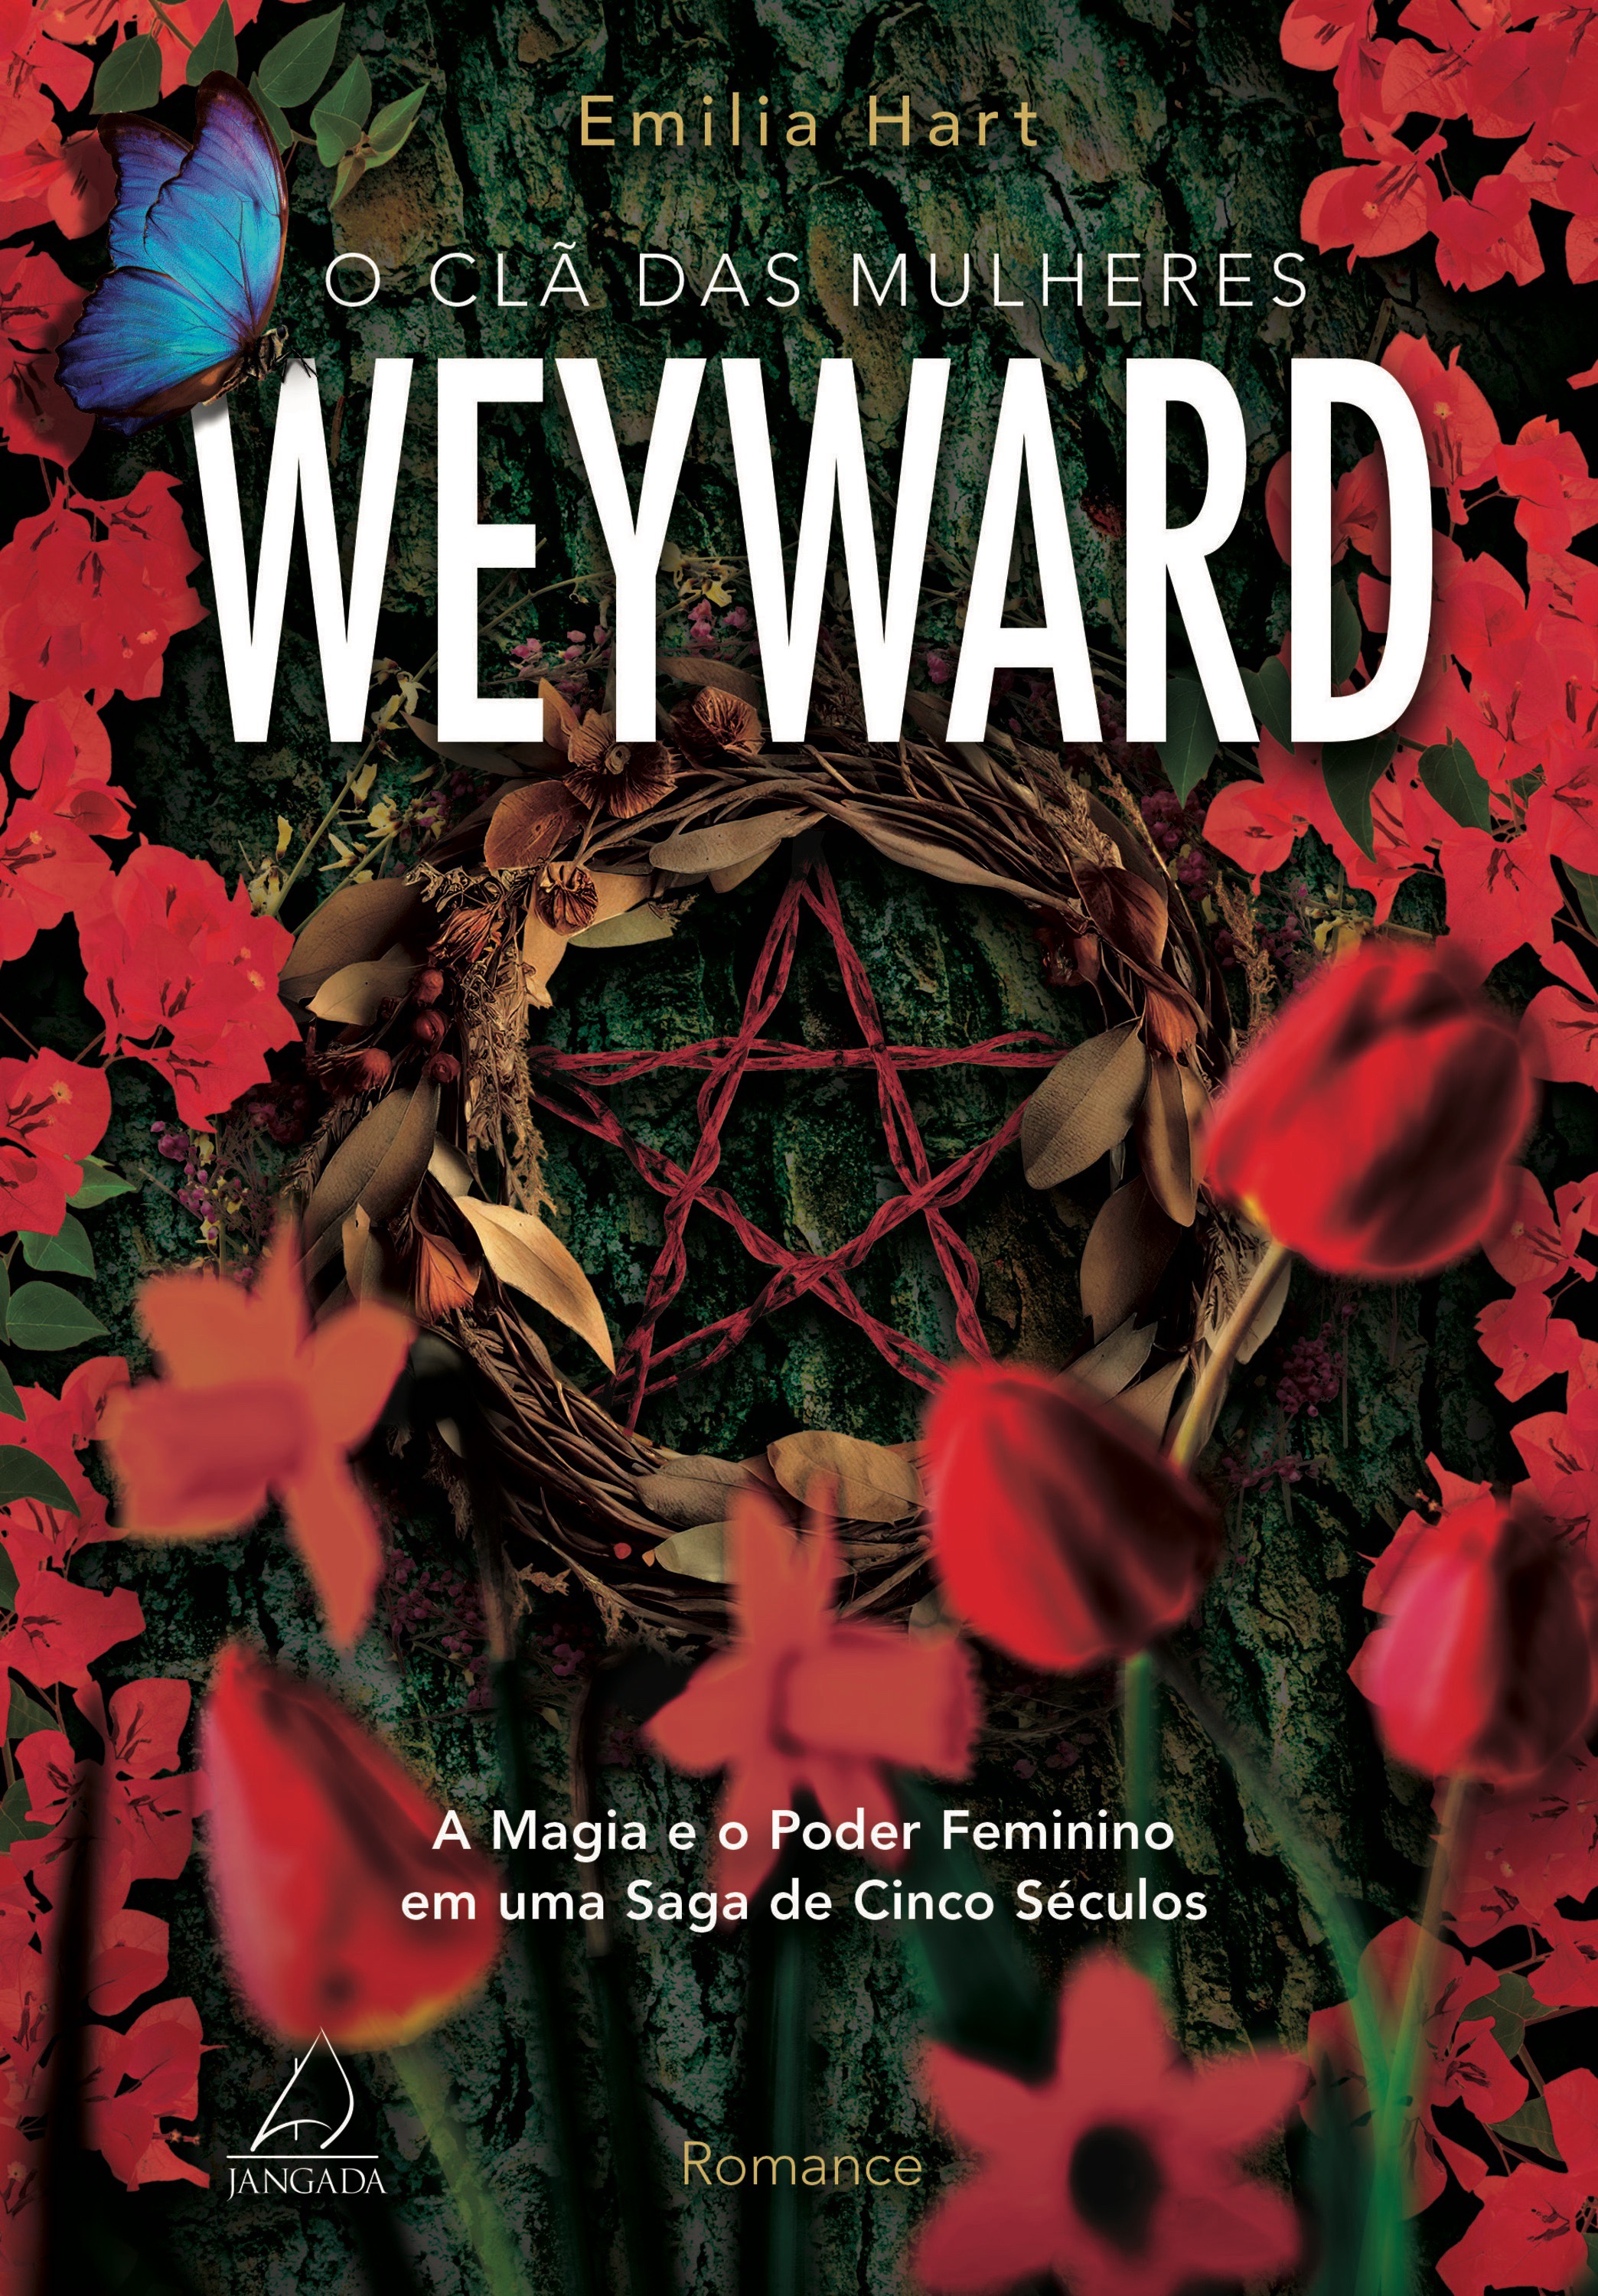 O clã das mulheres Weyward